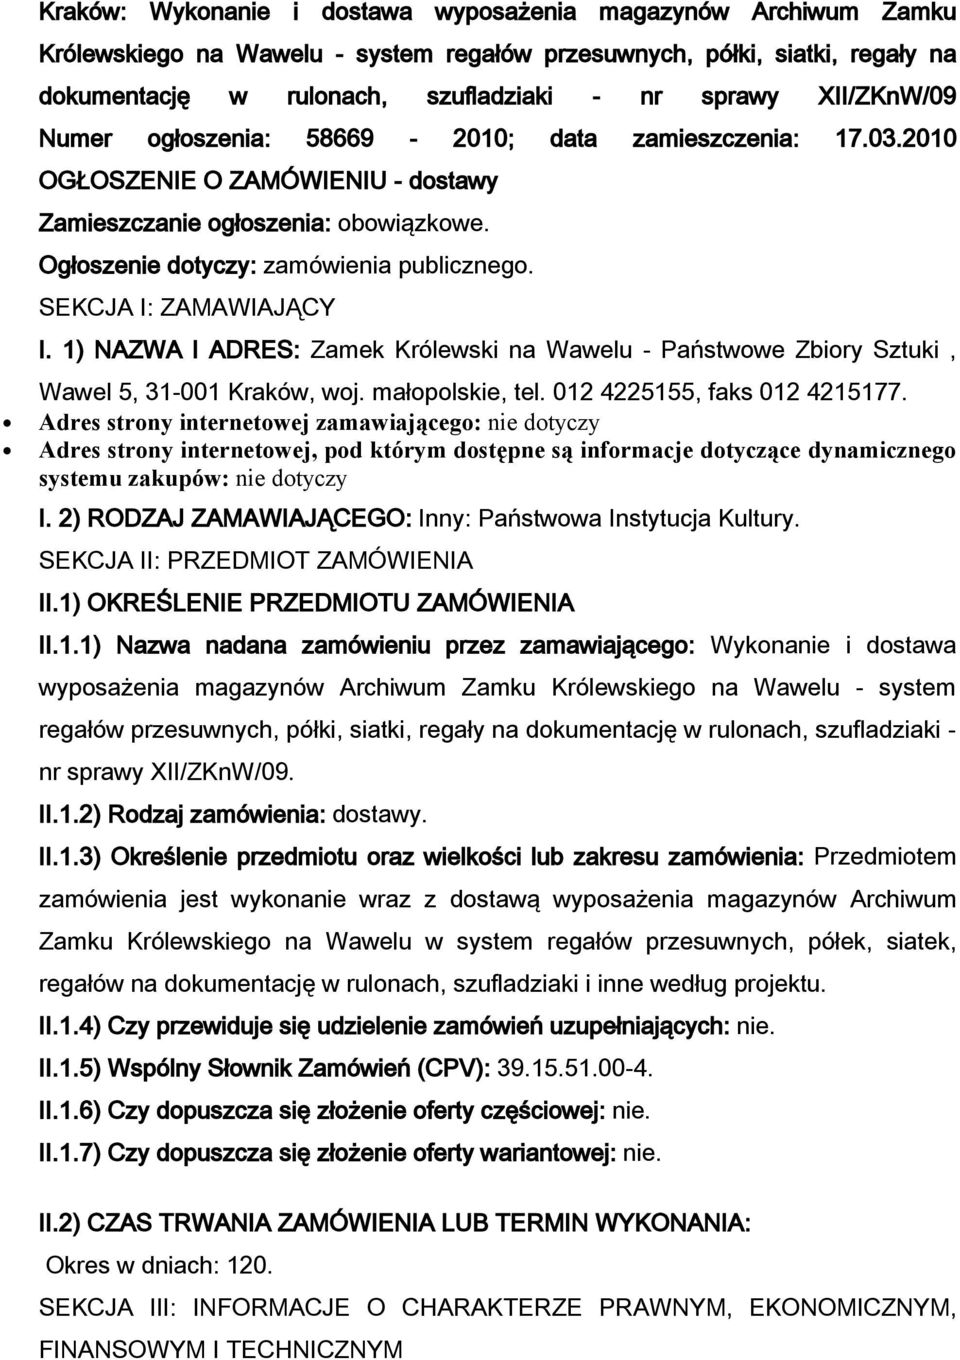 1) NAZWA I ADRES: Zamek Królewski na Wawelu - Państwwe Zbiry Sztuki, Wawel 5, 31-001 Kraków, wj. małplskie, tel. 012 4225155, faks 012 4215177.